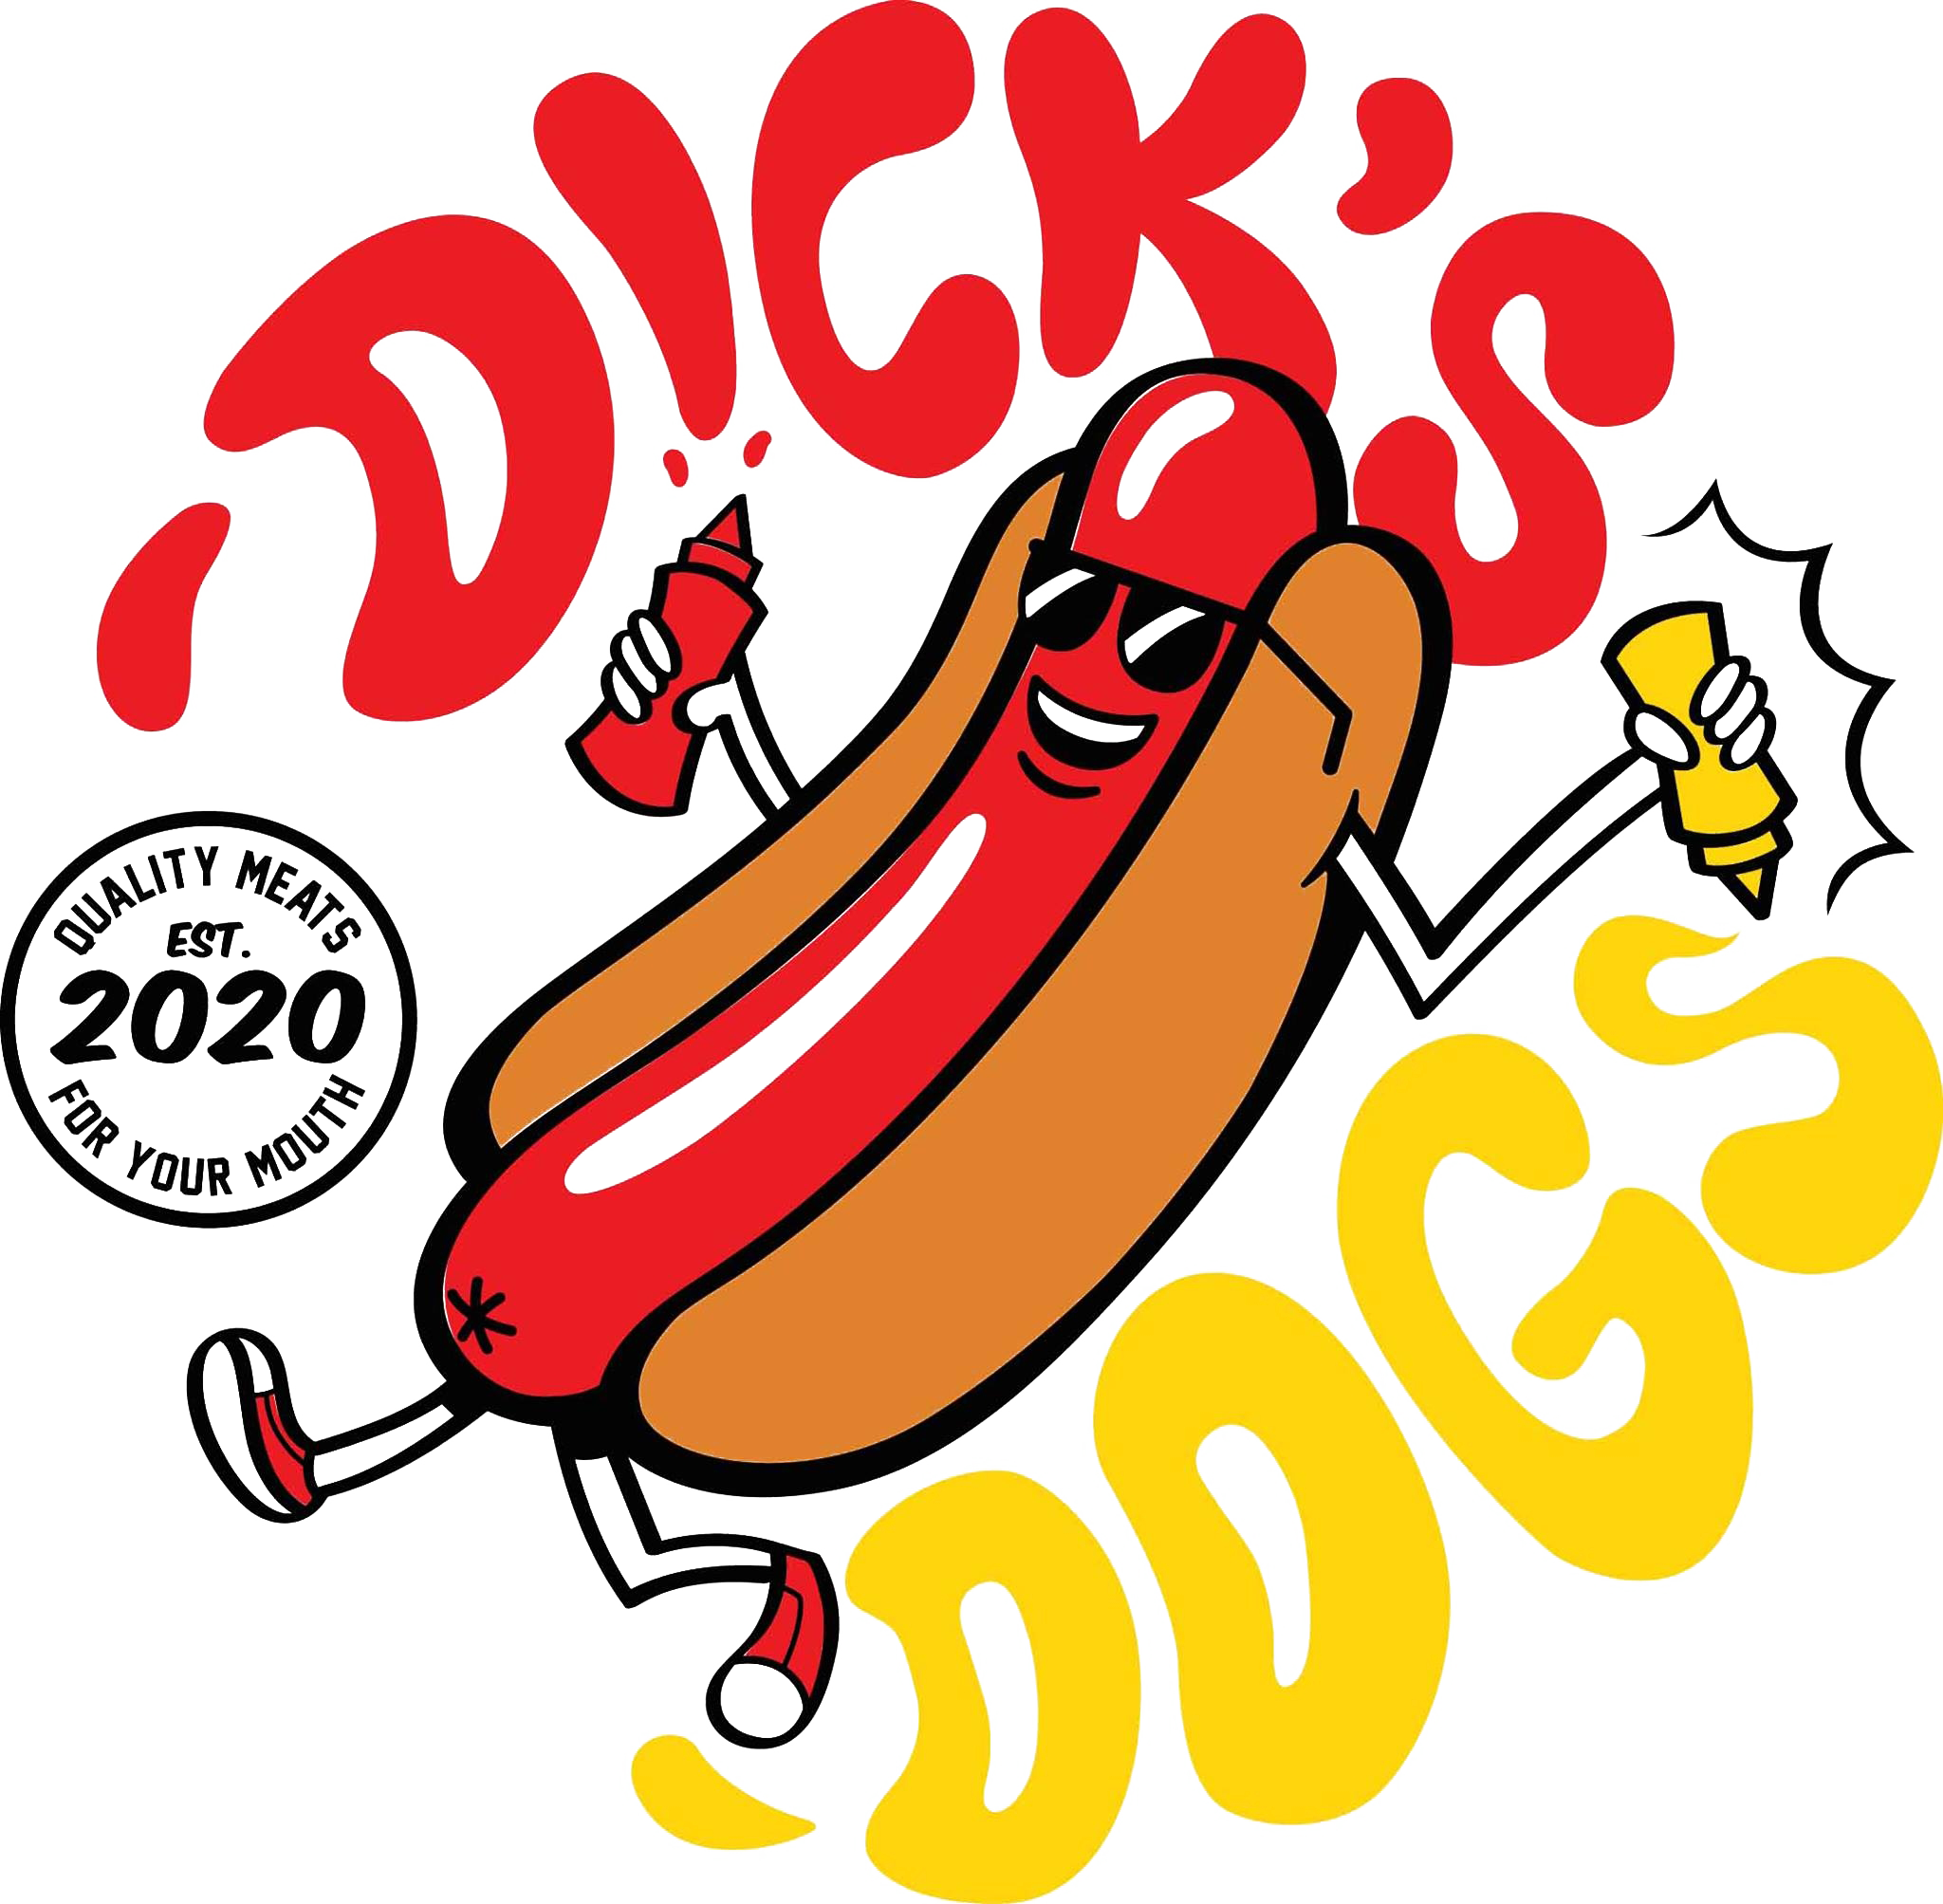 Dick In Hotdog Bun